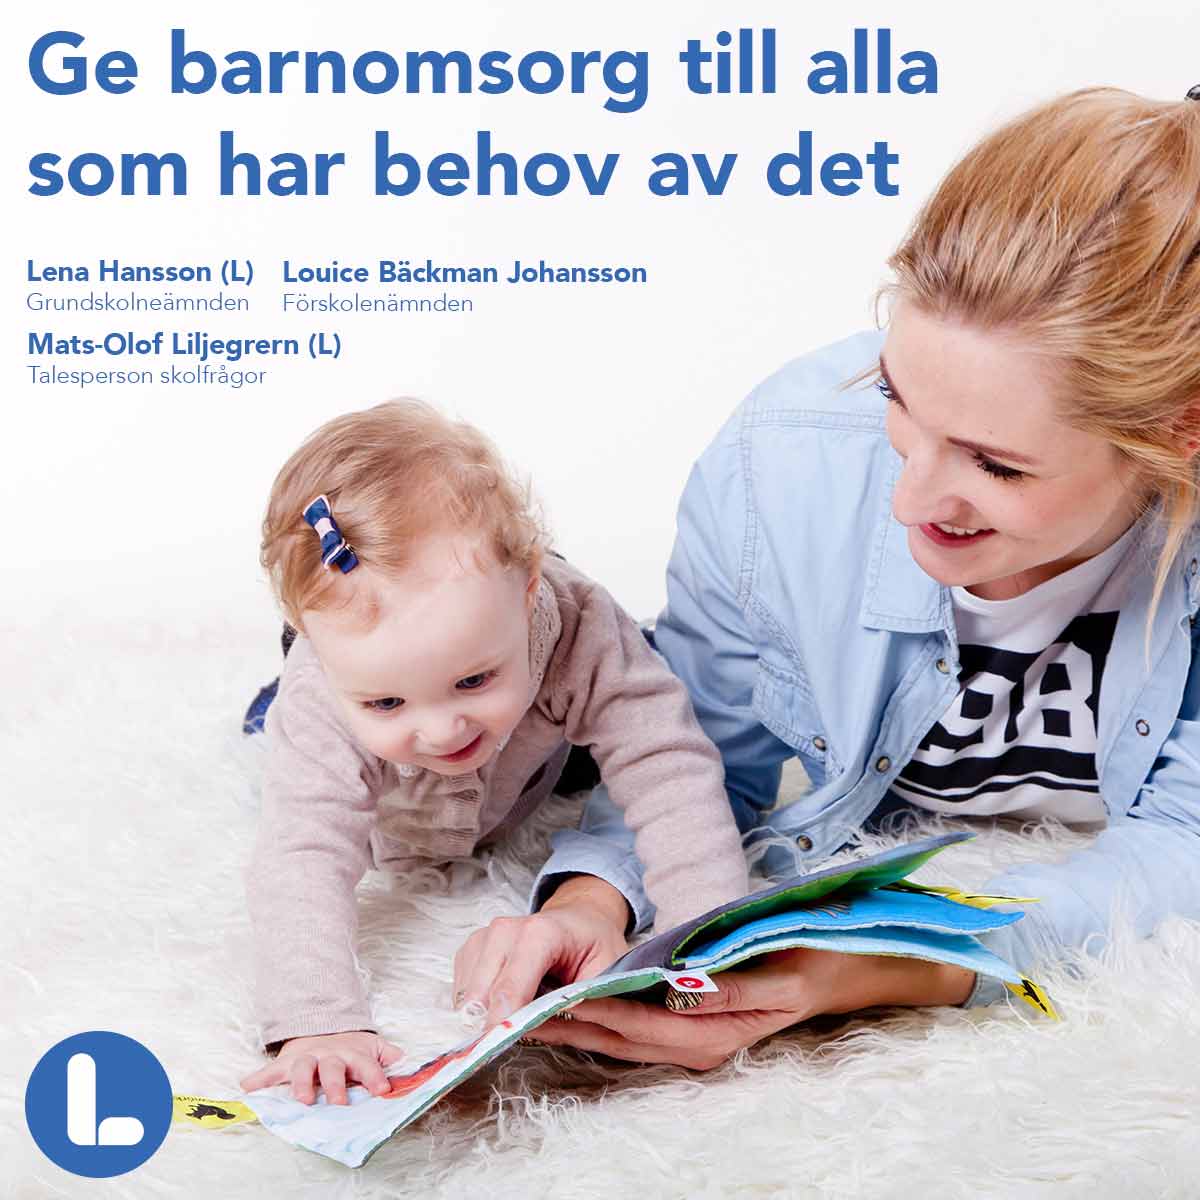 Alla föräldrar som har behov av barnomsorg ska erbjudas det i Örebro!